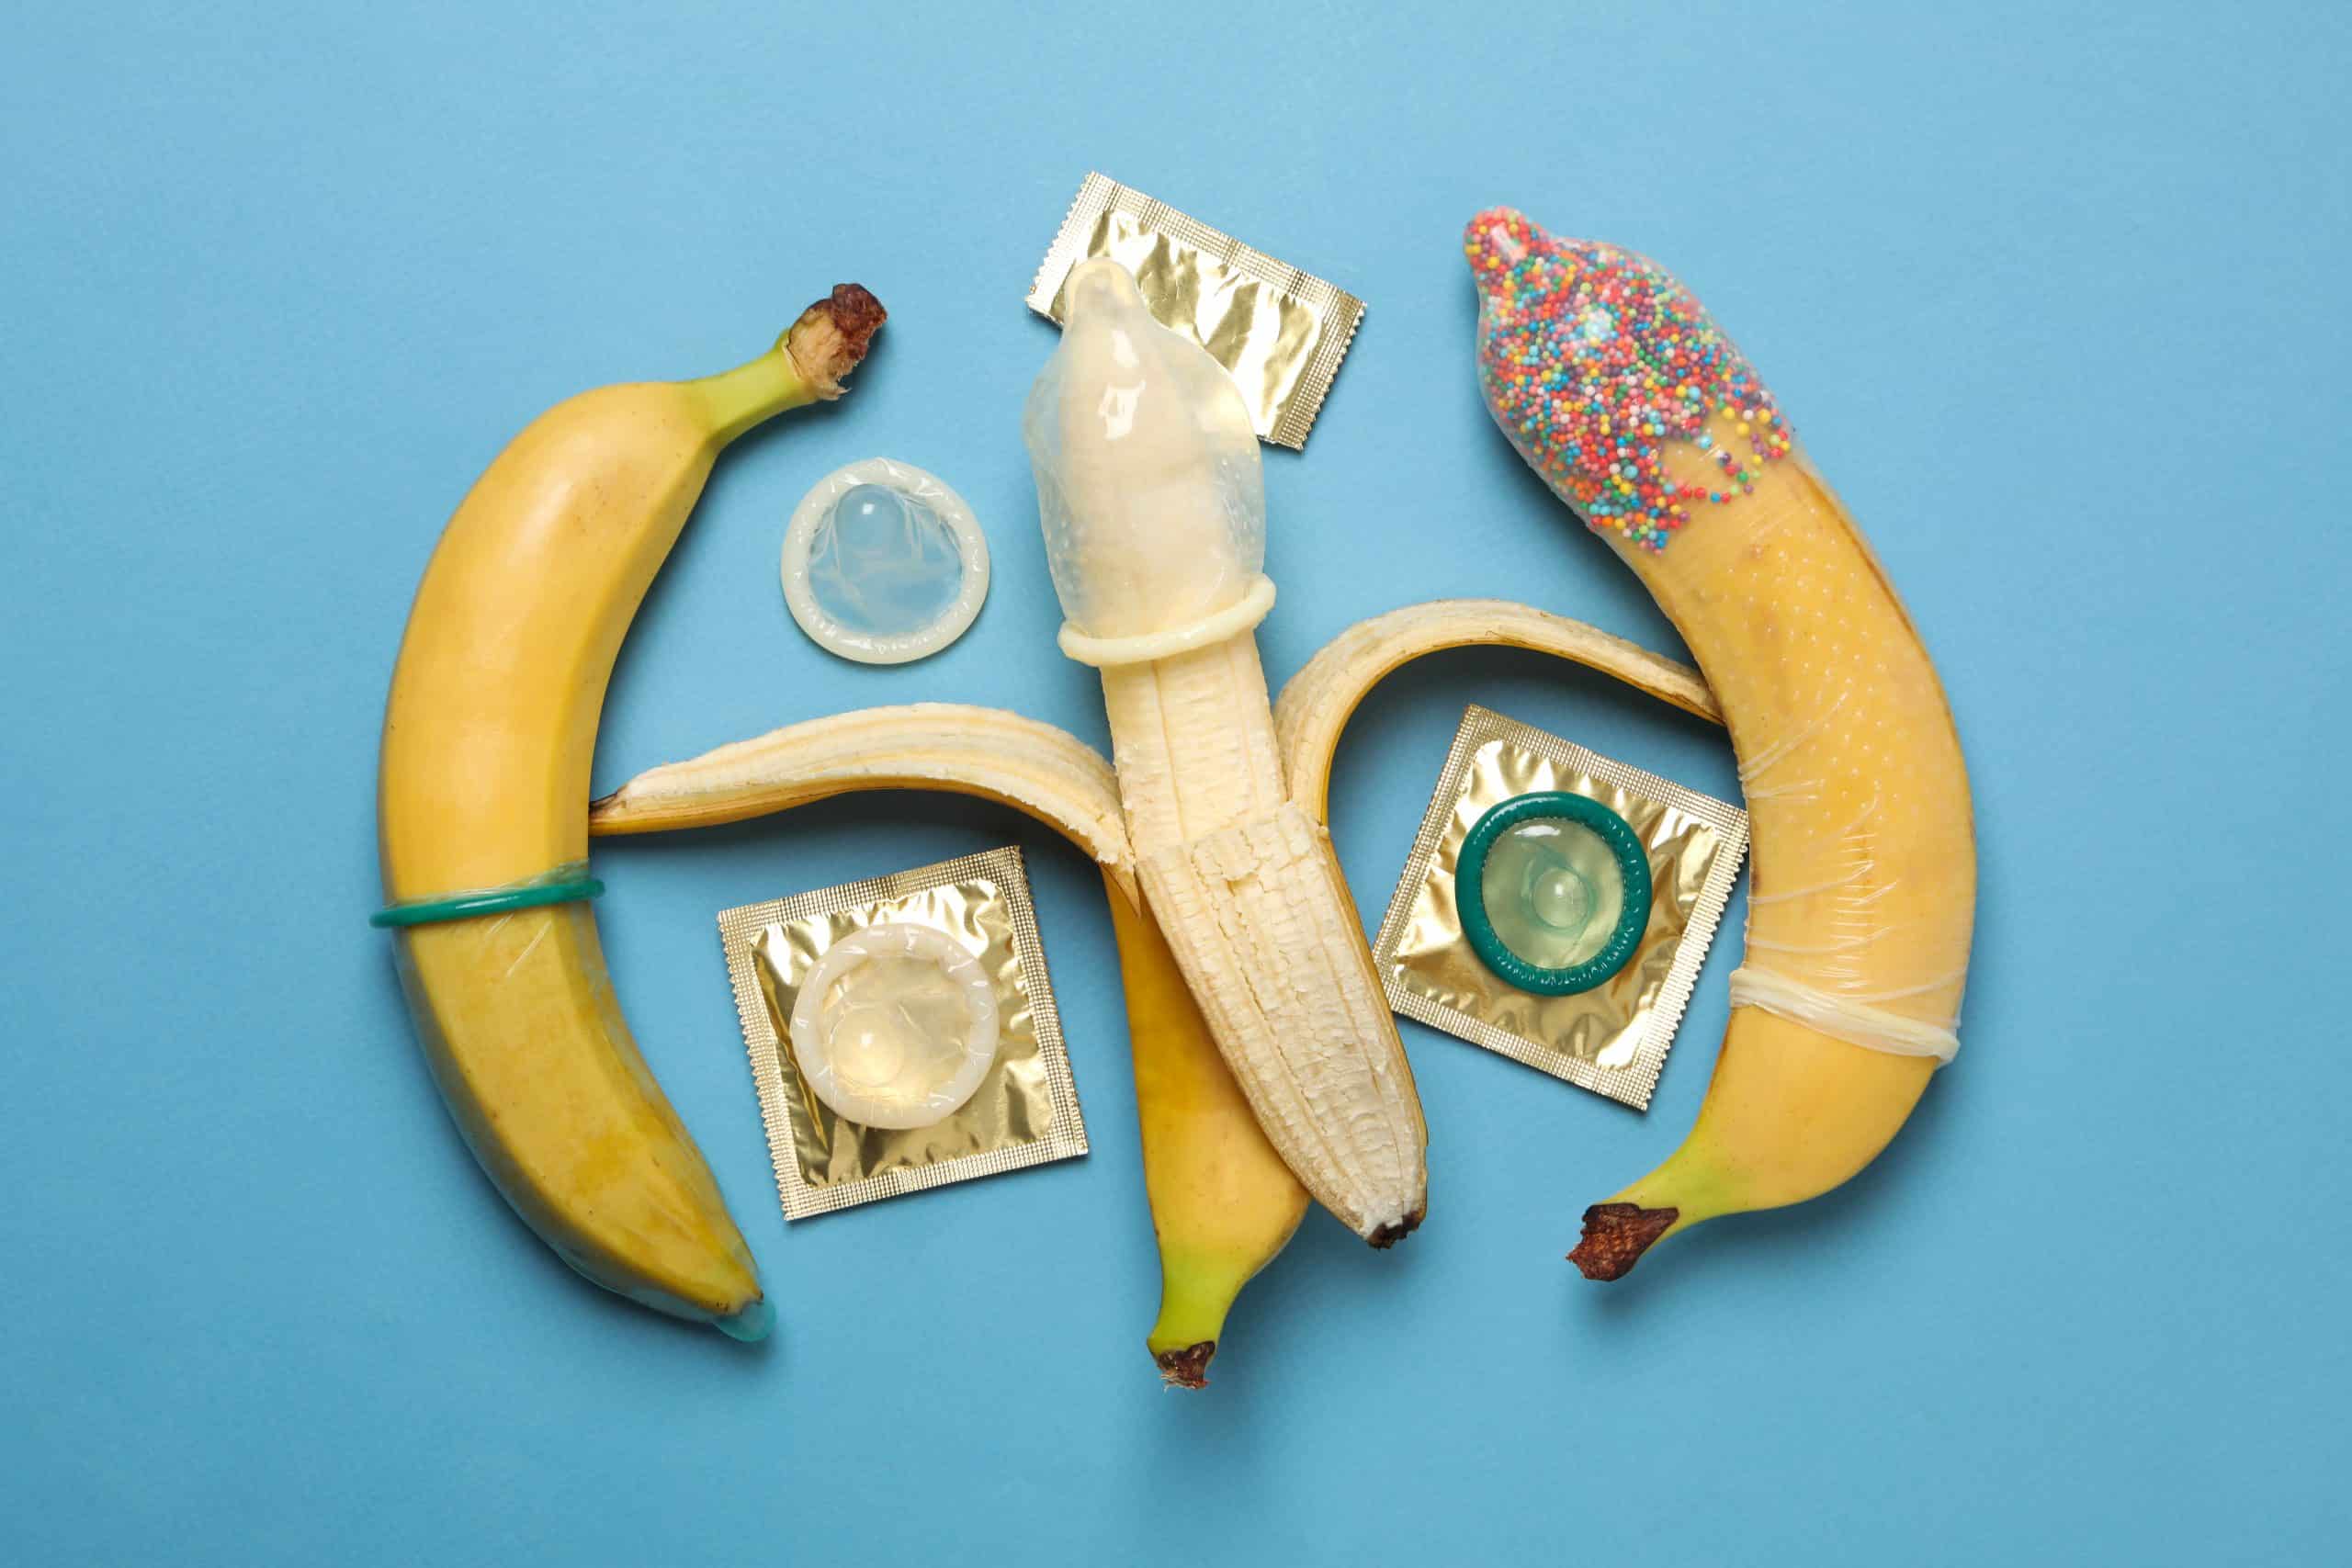 Különbözö óvszerek fehelyezése banánokra